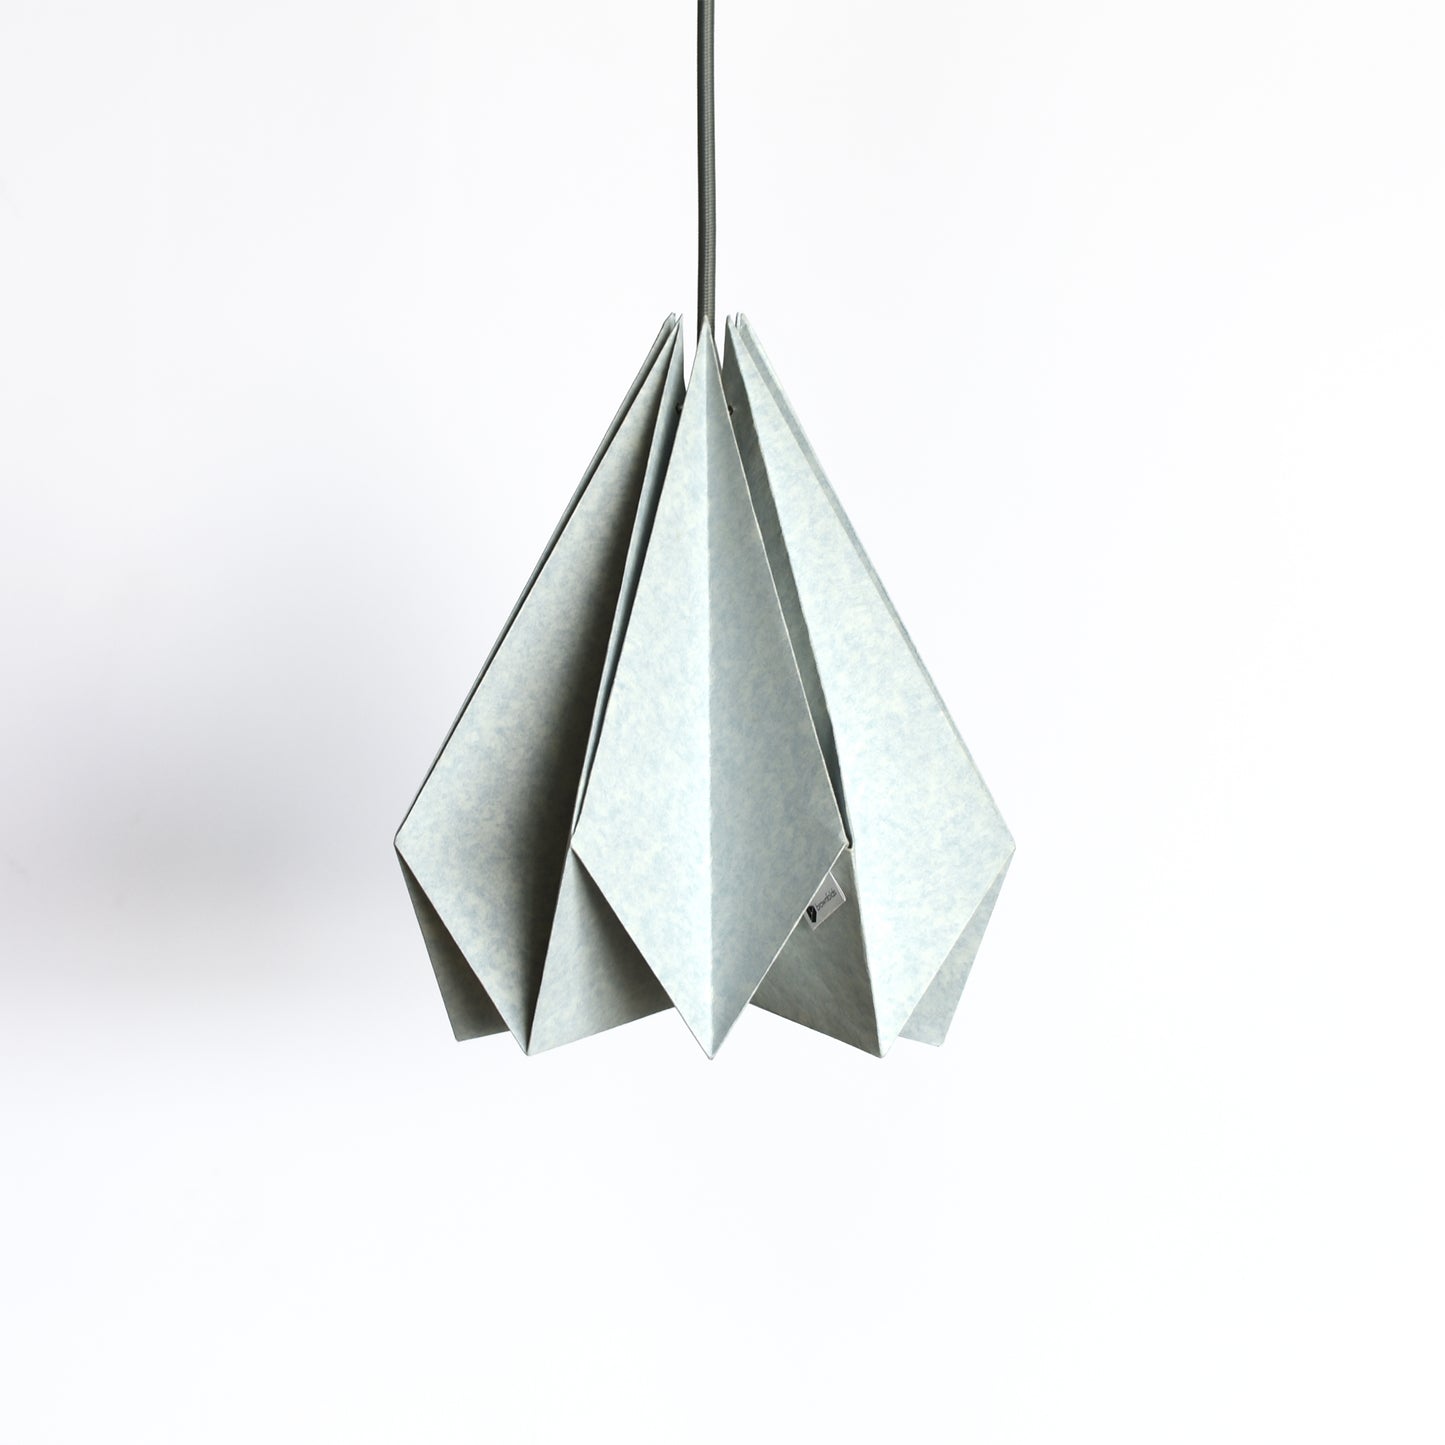 Unique Design Origami paper lamp shade buy online India